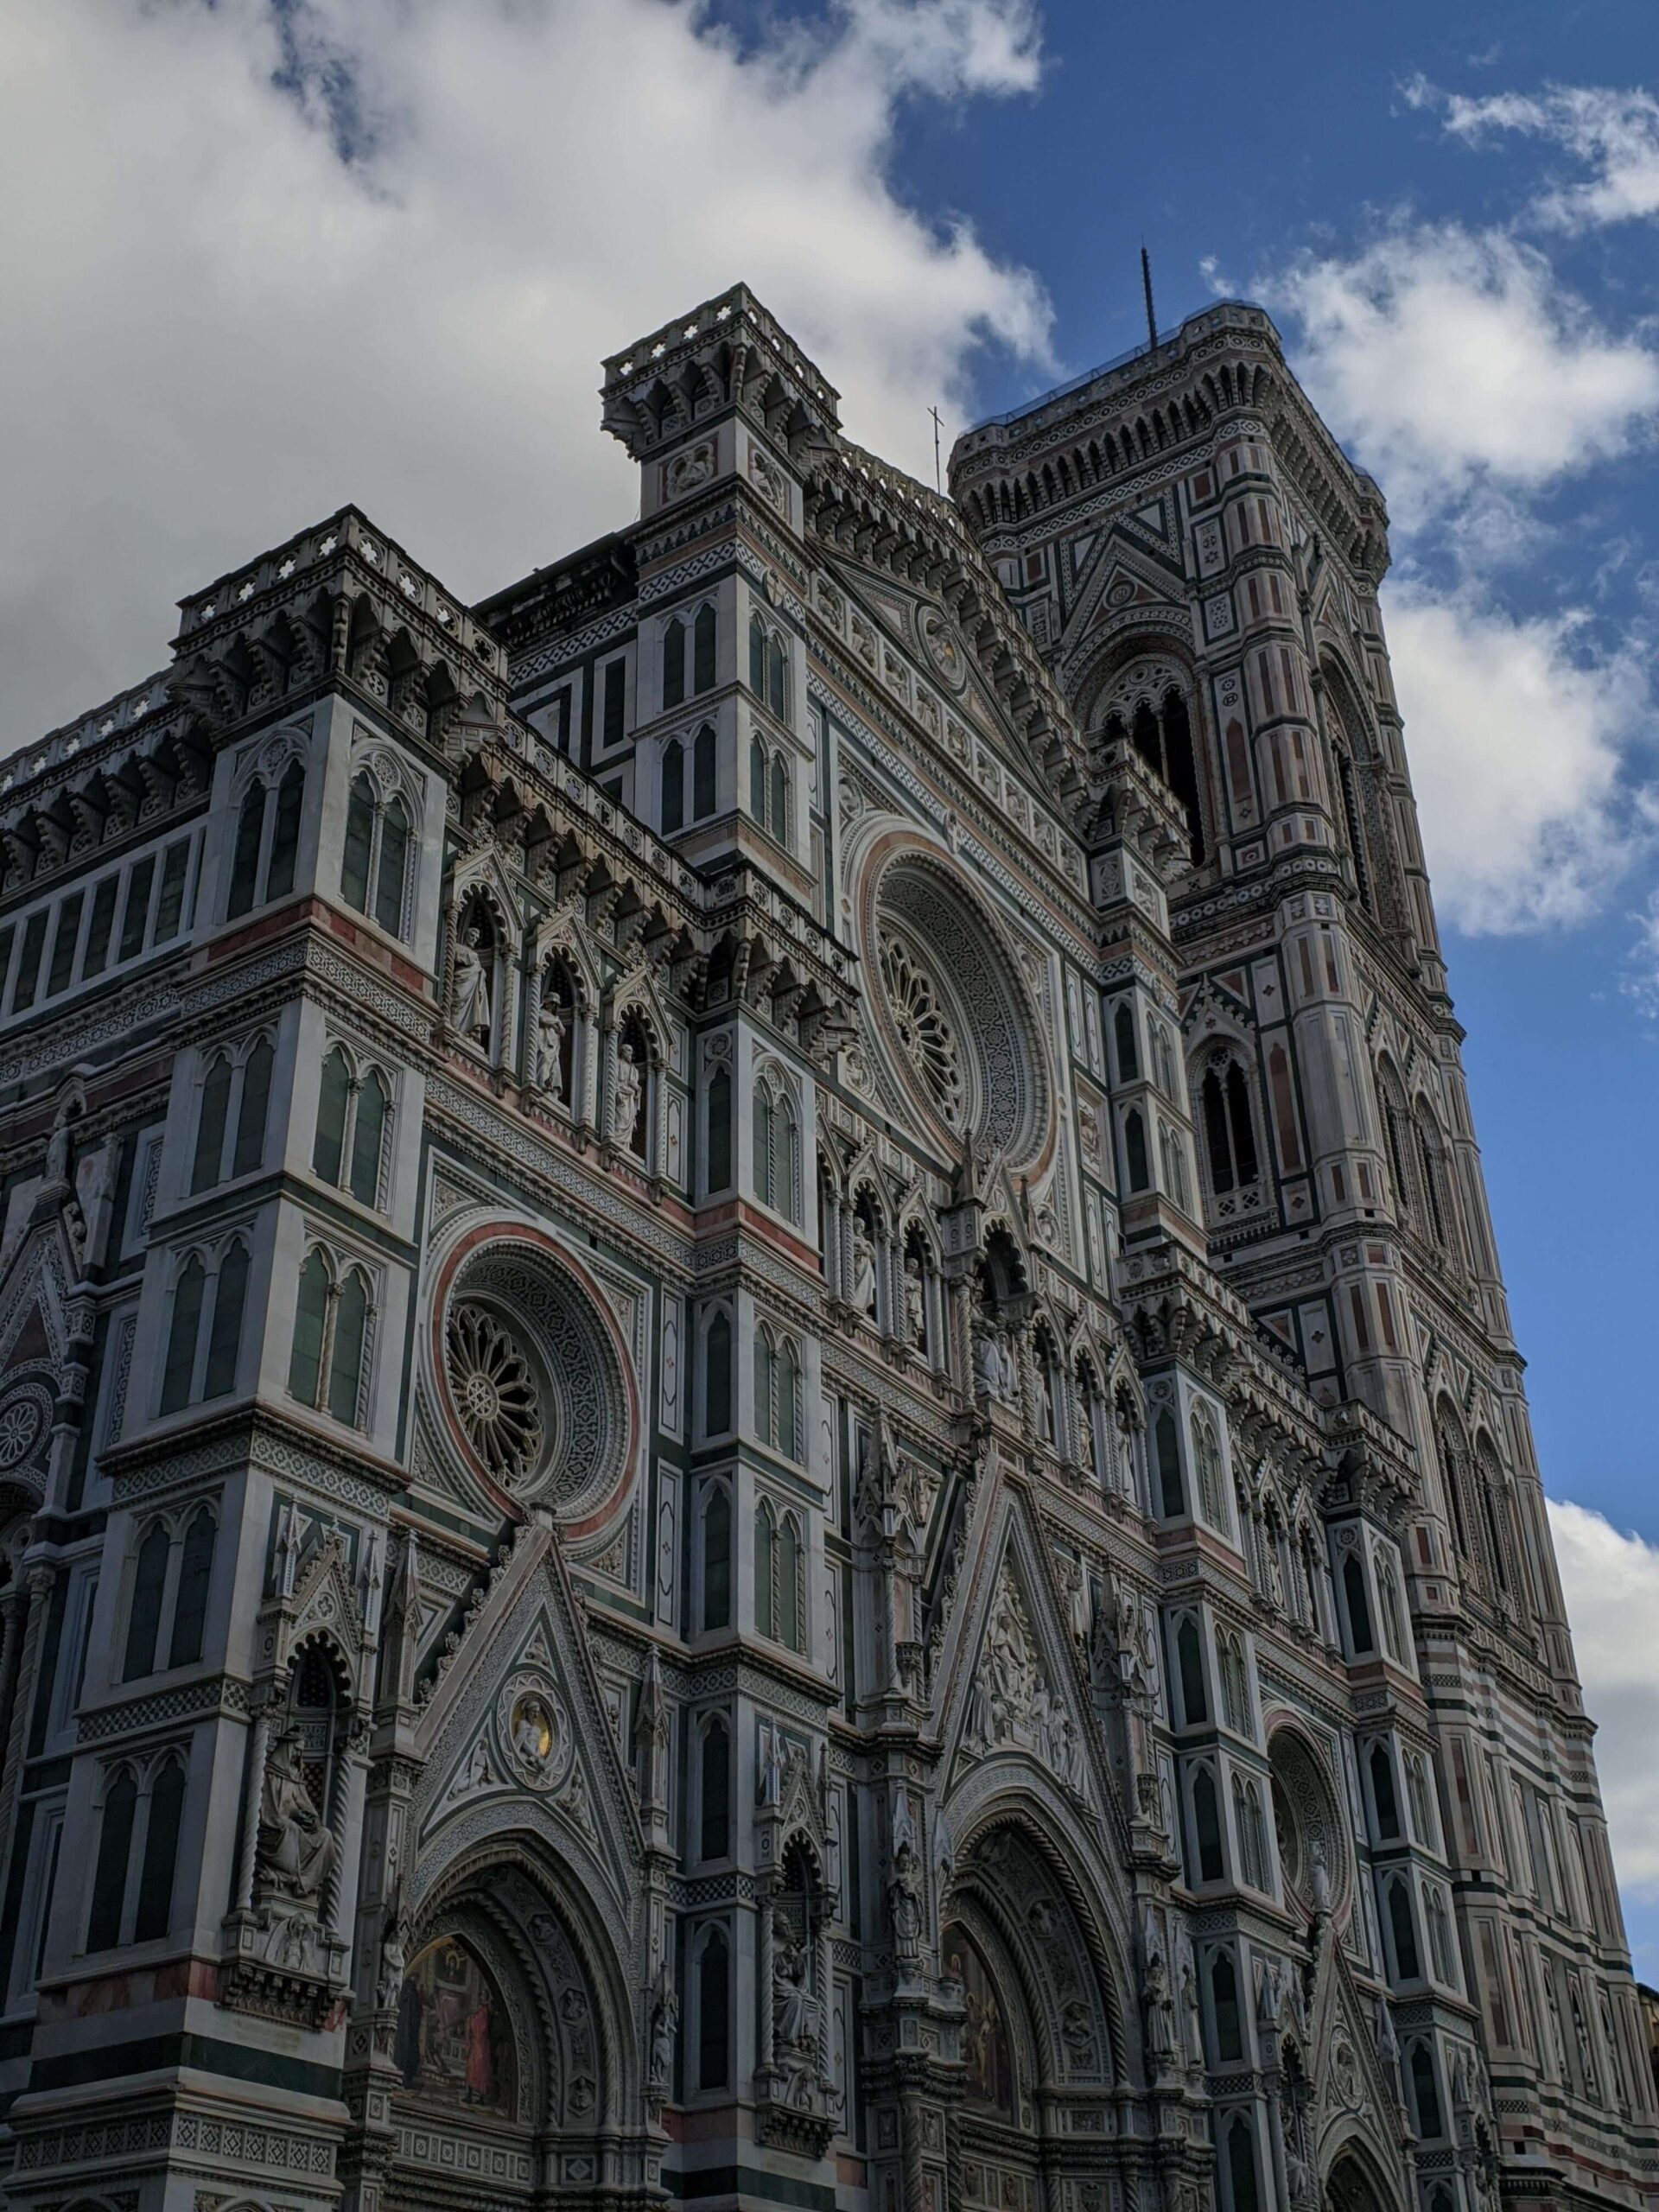 Fachada detalhada do Duomo de Florença sob um céu parcialmente nublado, destacando a intrincada arquitetura gótica, com seus mármores coloridos e a grande rosácea.